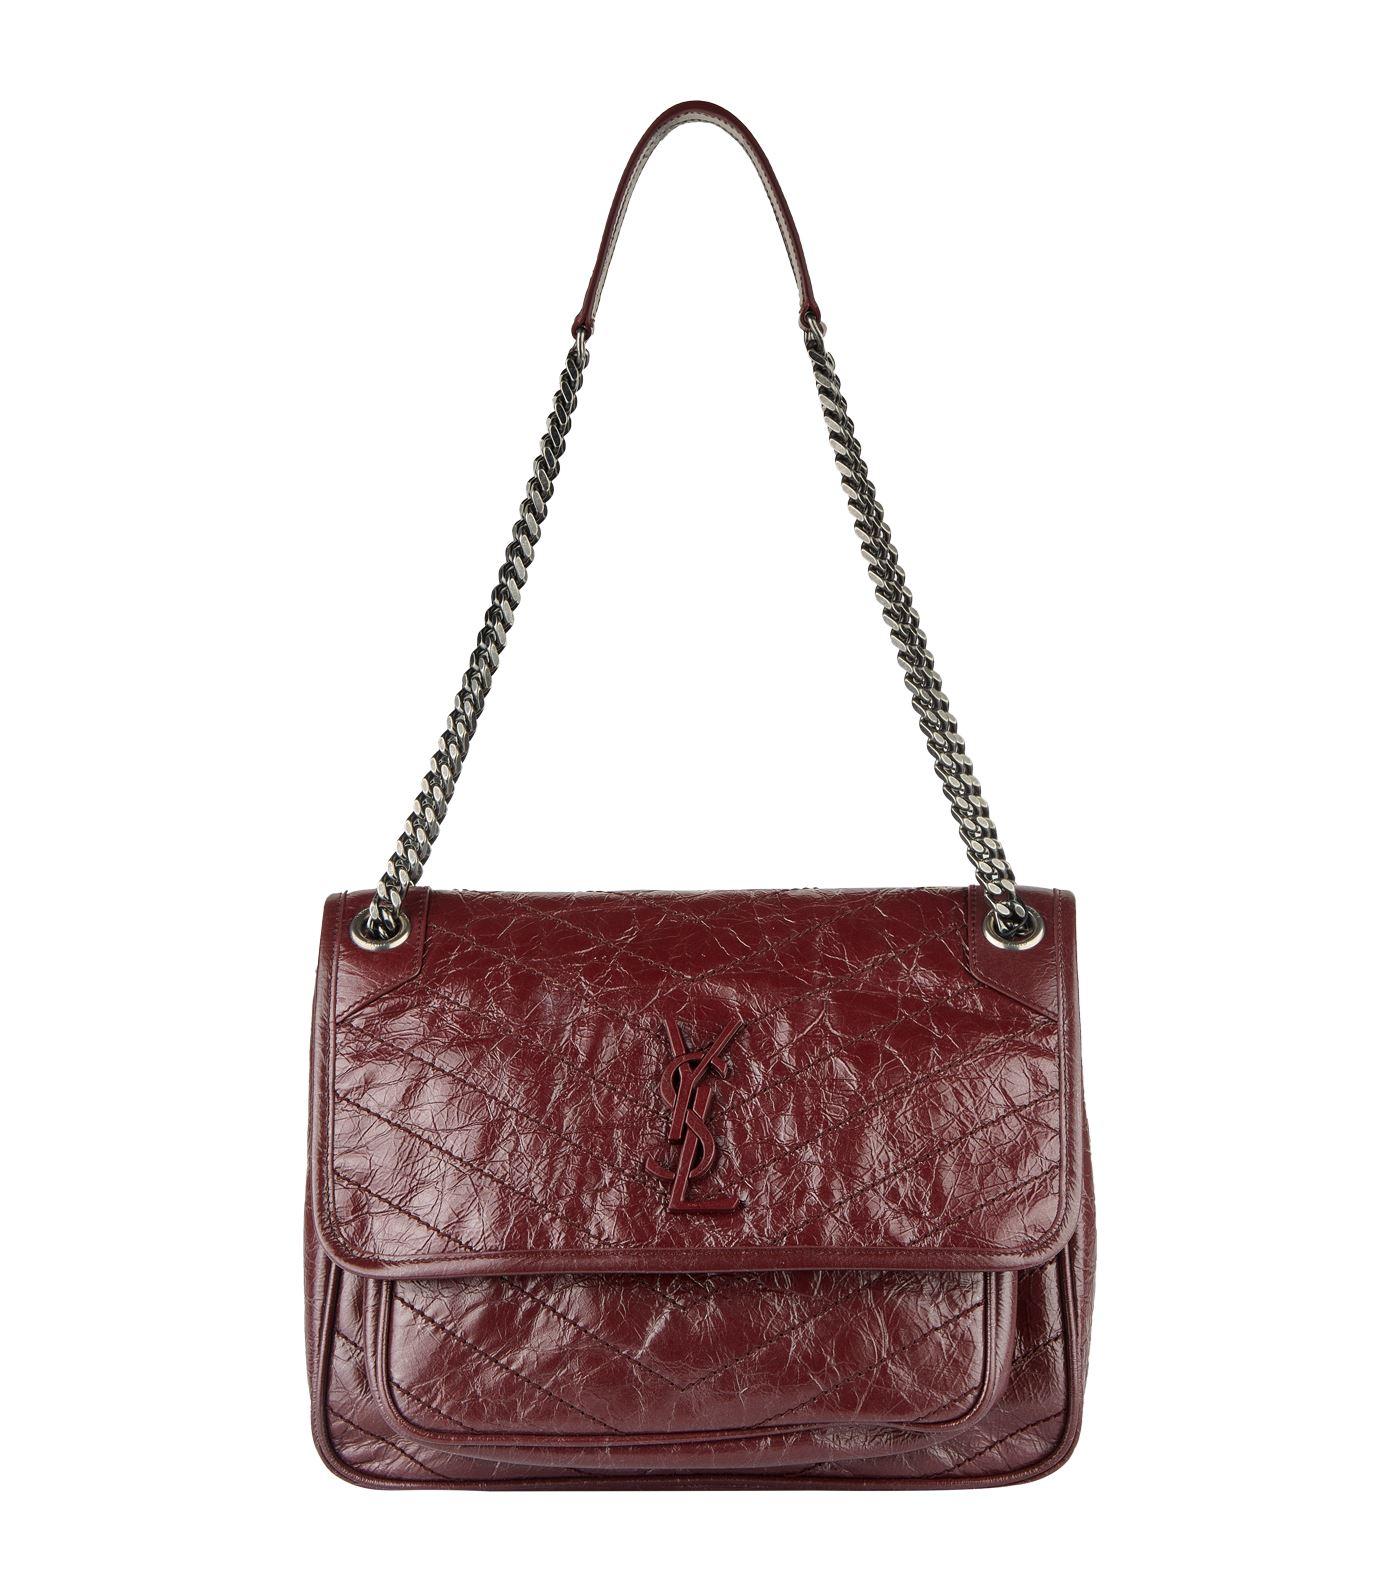 Saint Laurent Medium Leather Niki Shoulder Bag in Red - Lyst